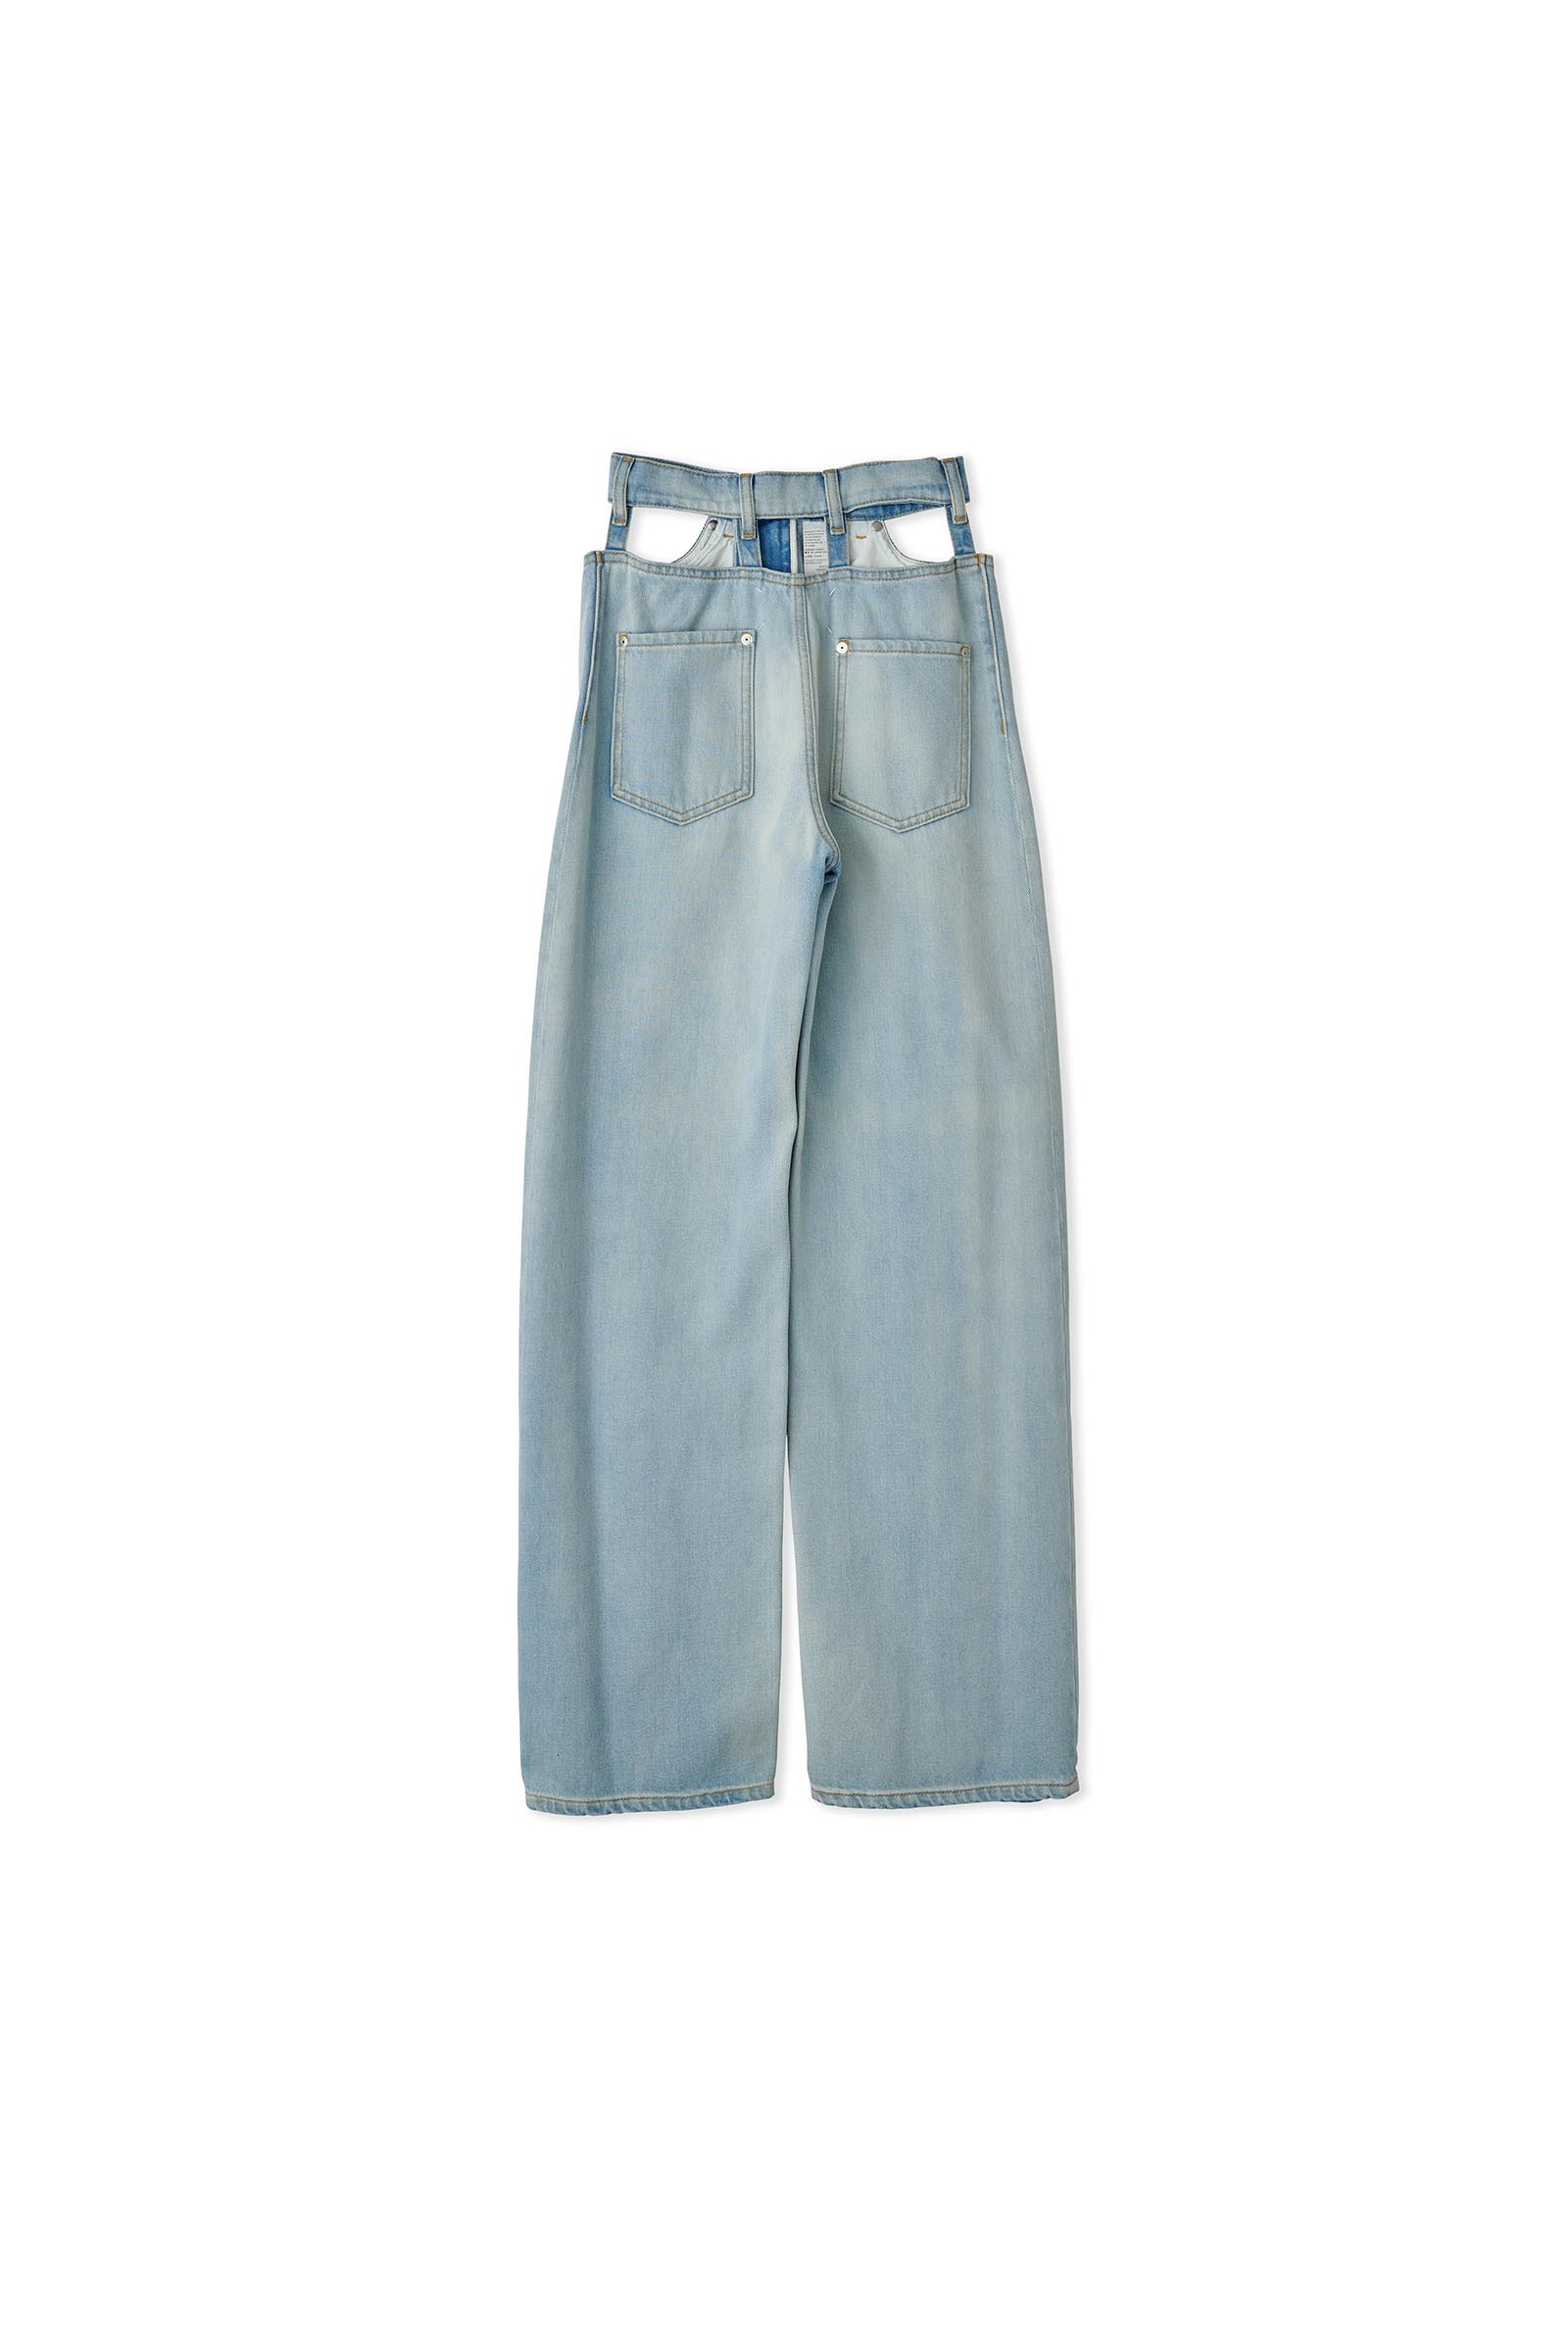 Maison Margiela / Décortiqué jeans